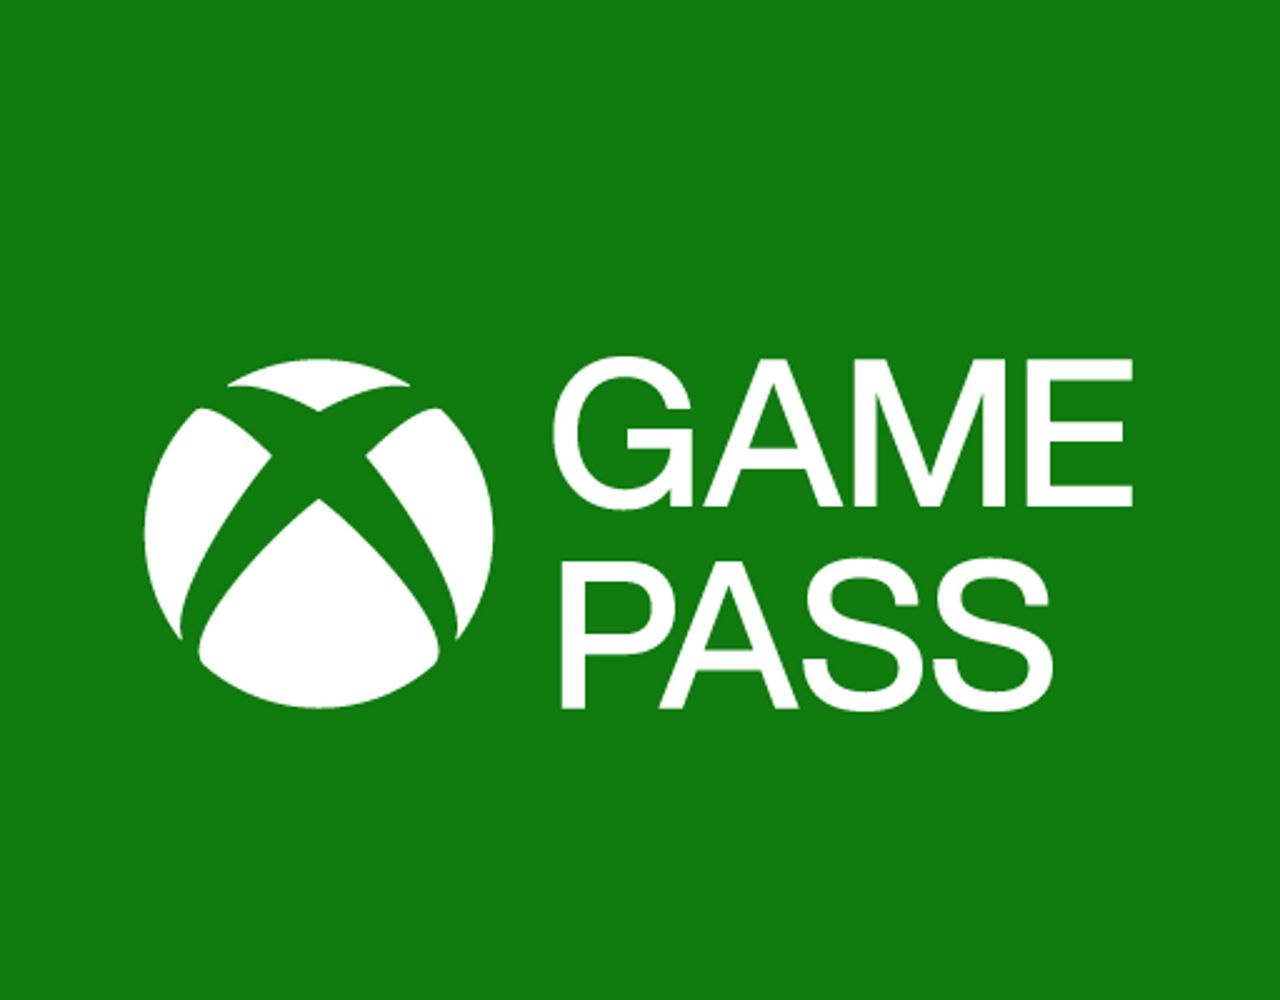 Xbox Game Pass będzie droższy w Polsce. Ile zapłacimy?